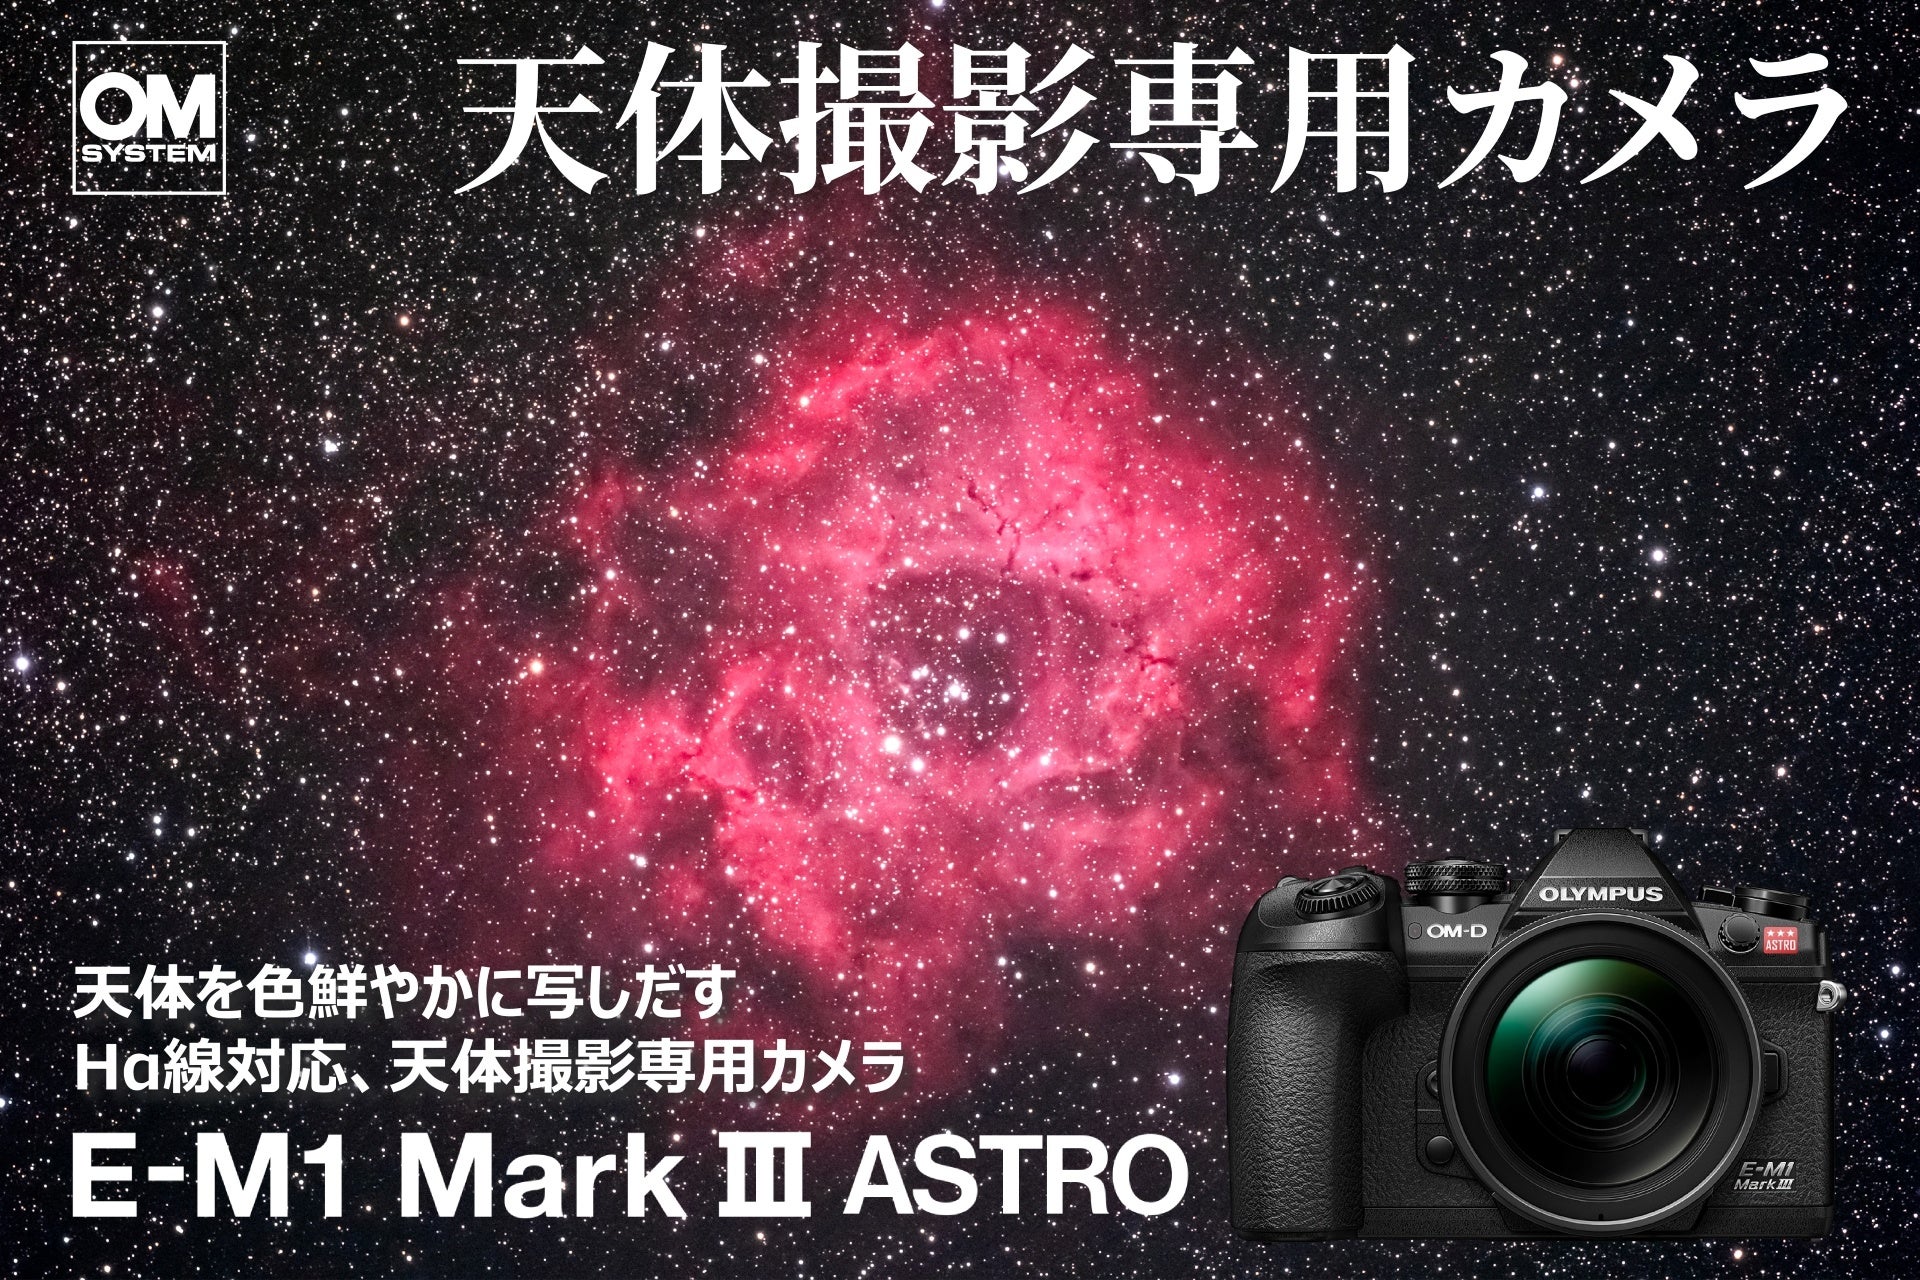 天体撮影専用カメラ「OM SYSTEM E-M1 Mark III ASTRO」および「ボディーマウントフィルター」2種類を発売